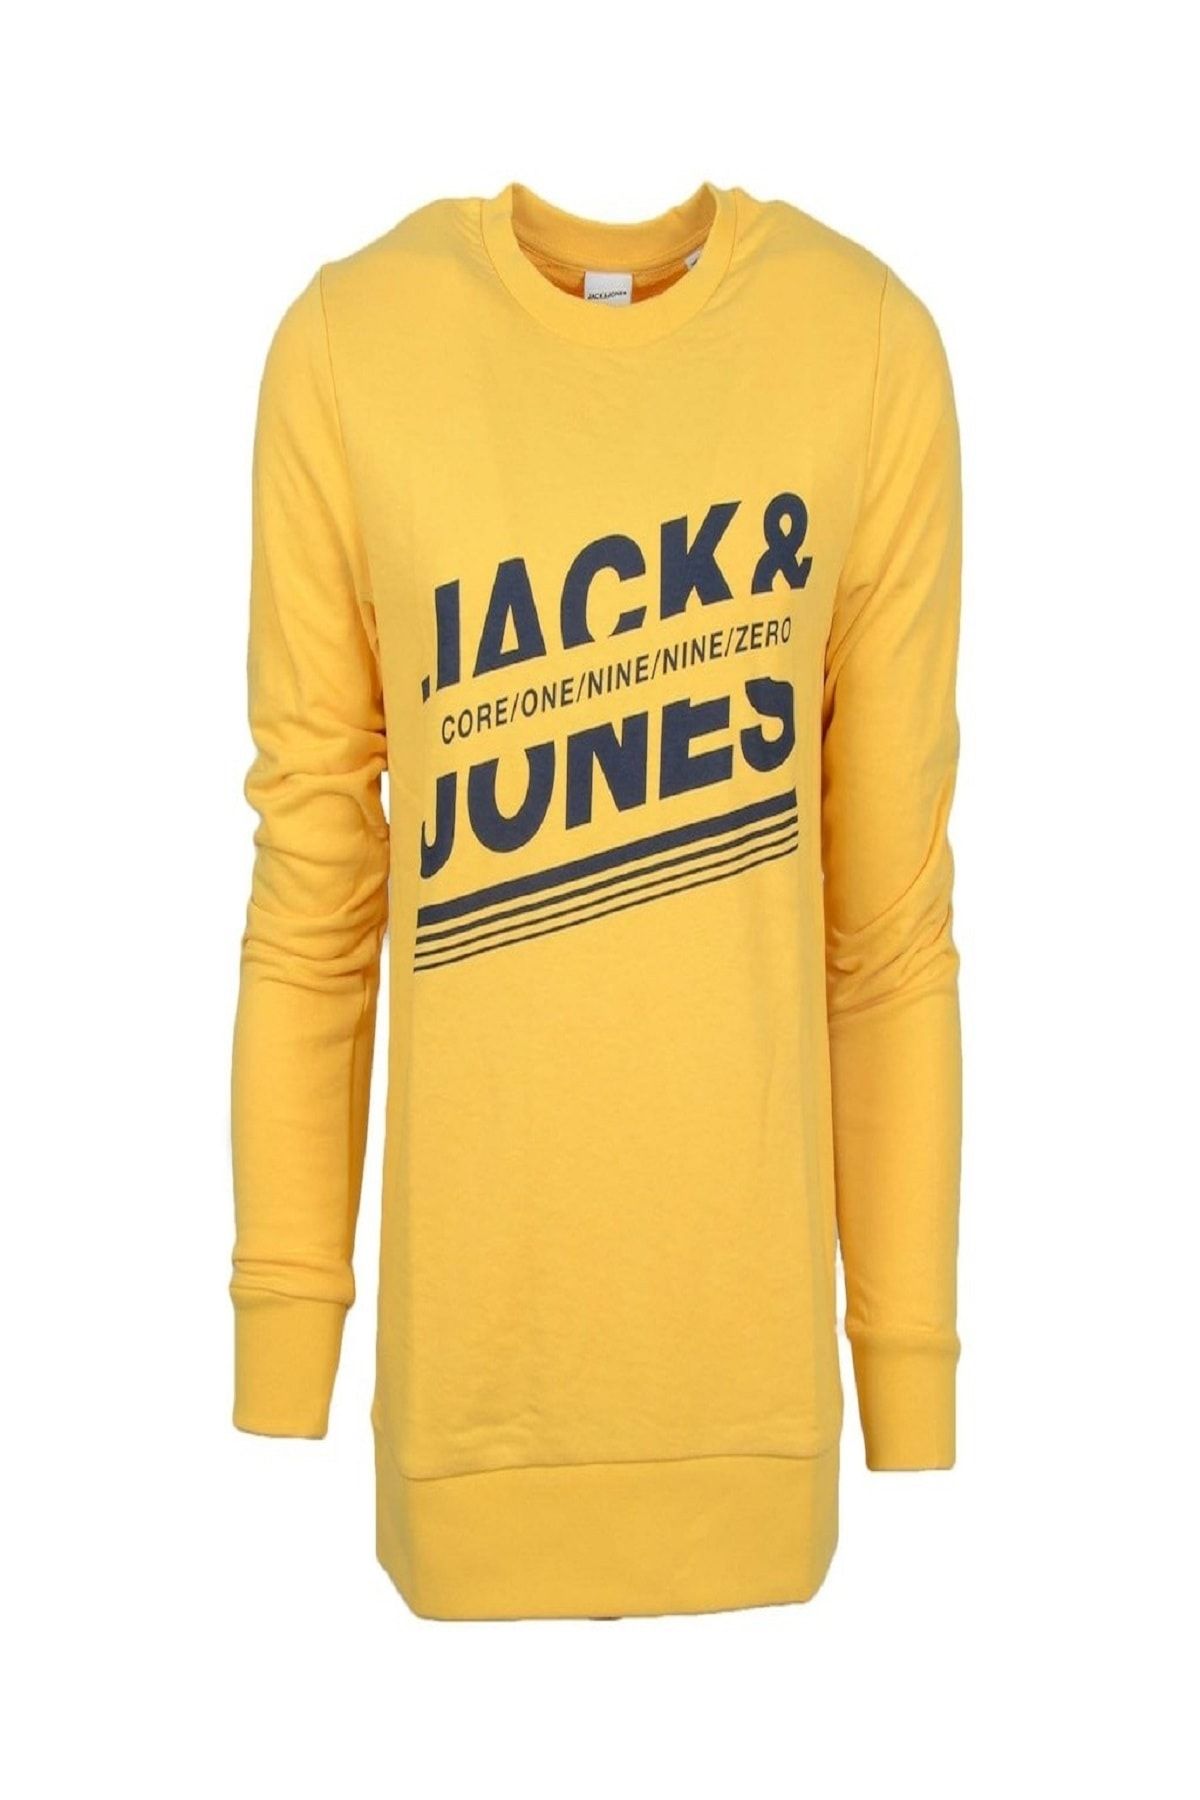 Jack & Jones Chillox Erkek Sarı Sweatshirt (12180191-yy)